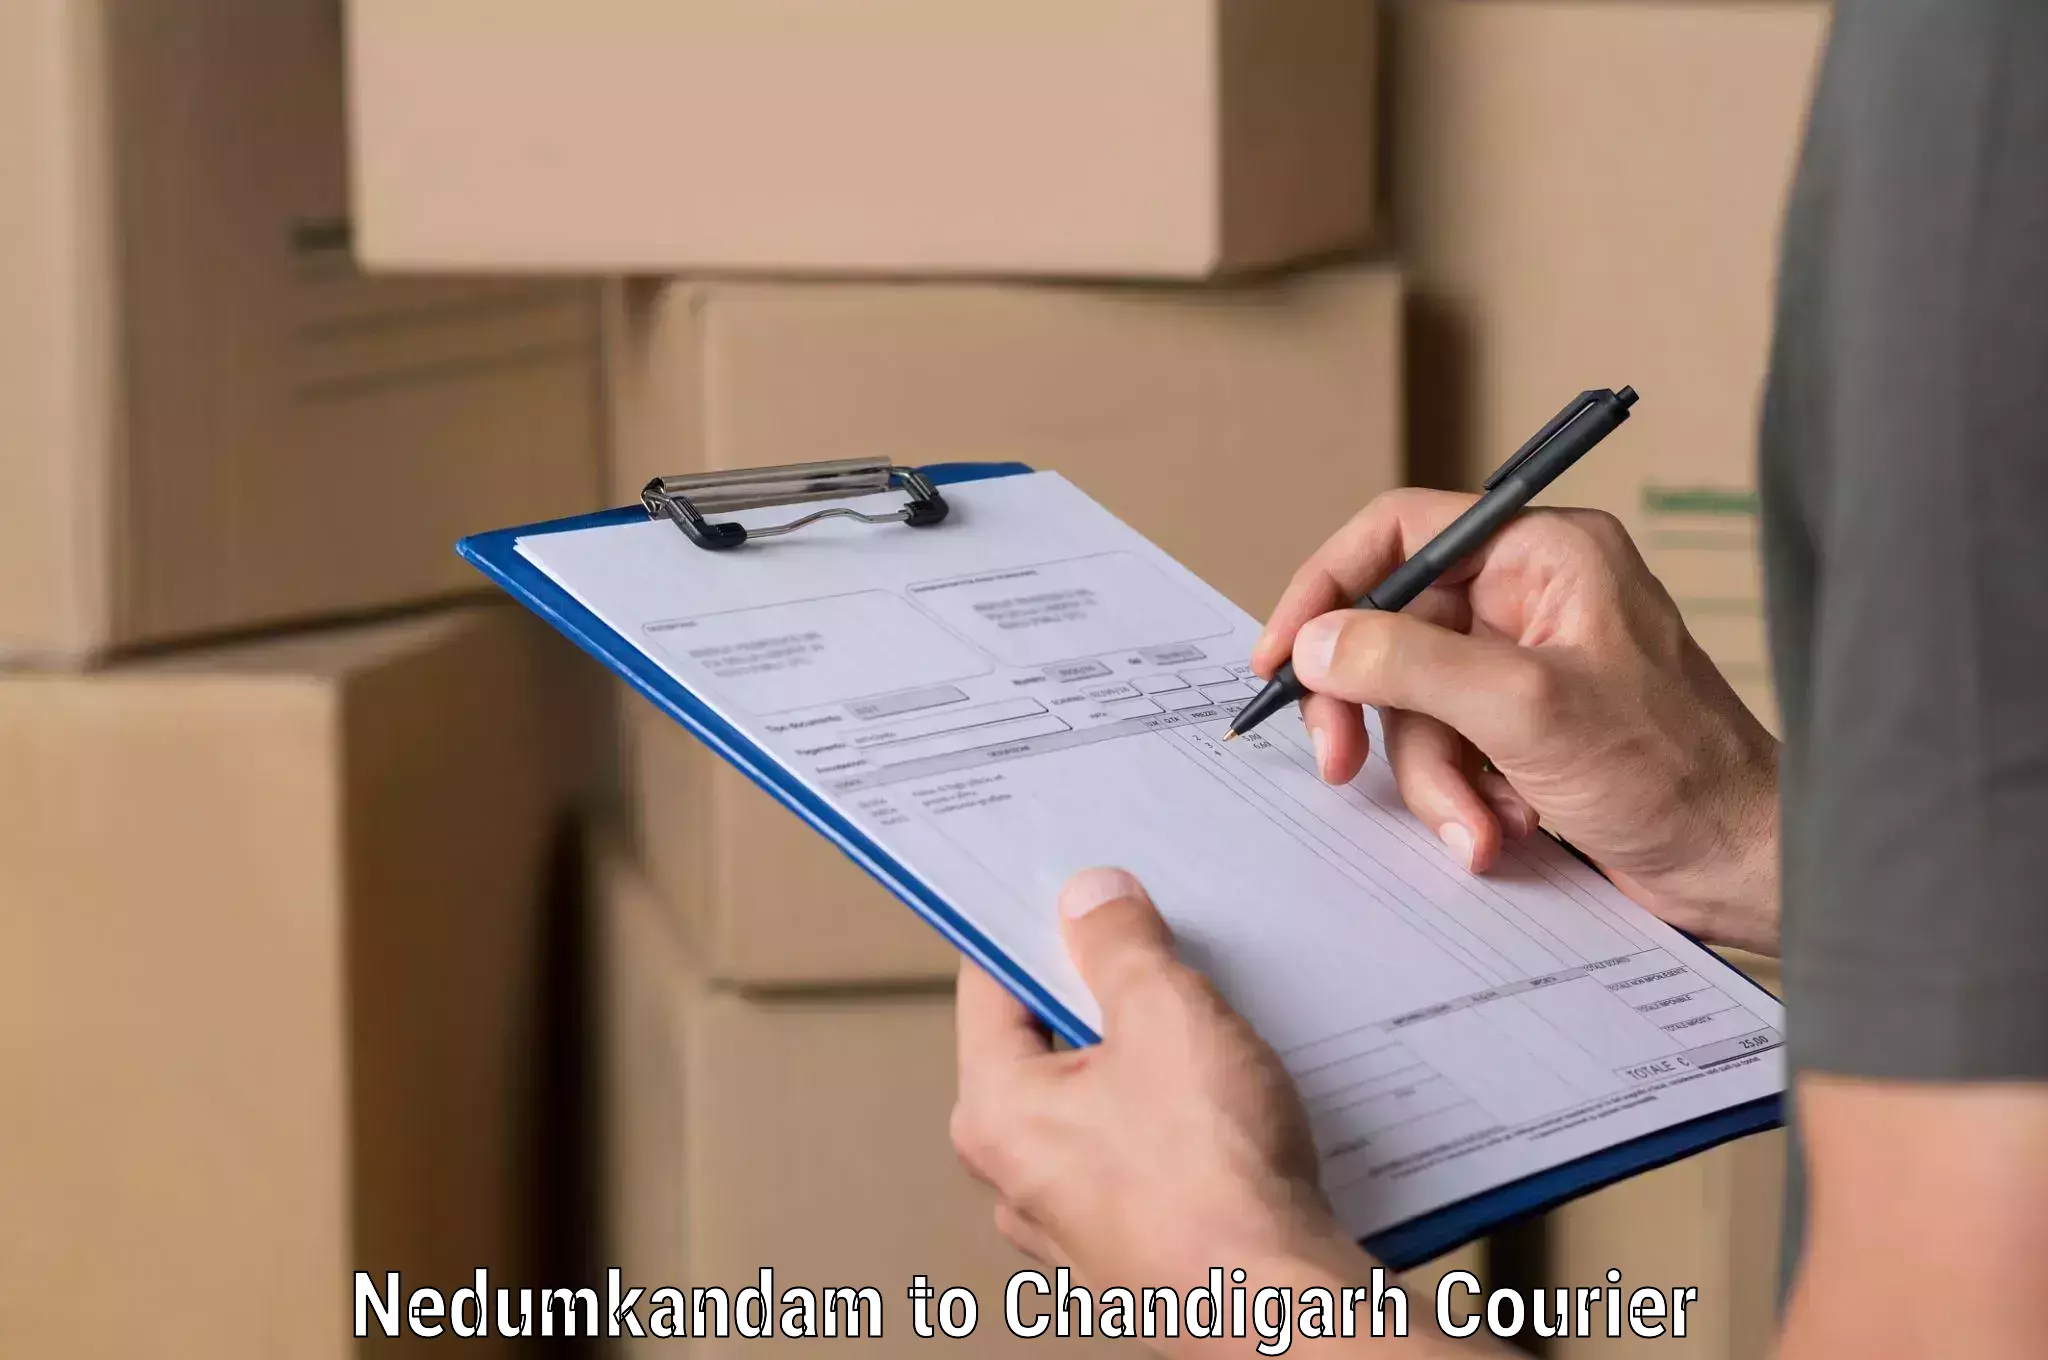 Global shipping networks Nedumkandam to Chandigarh